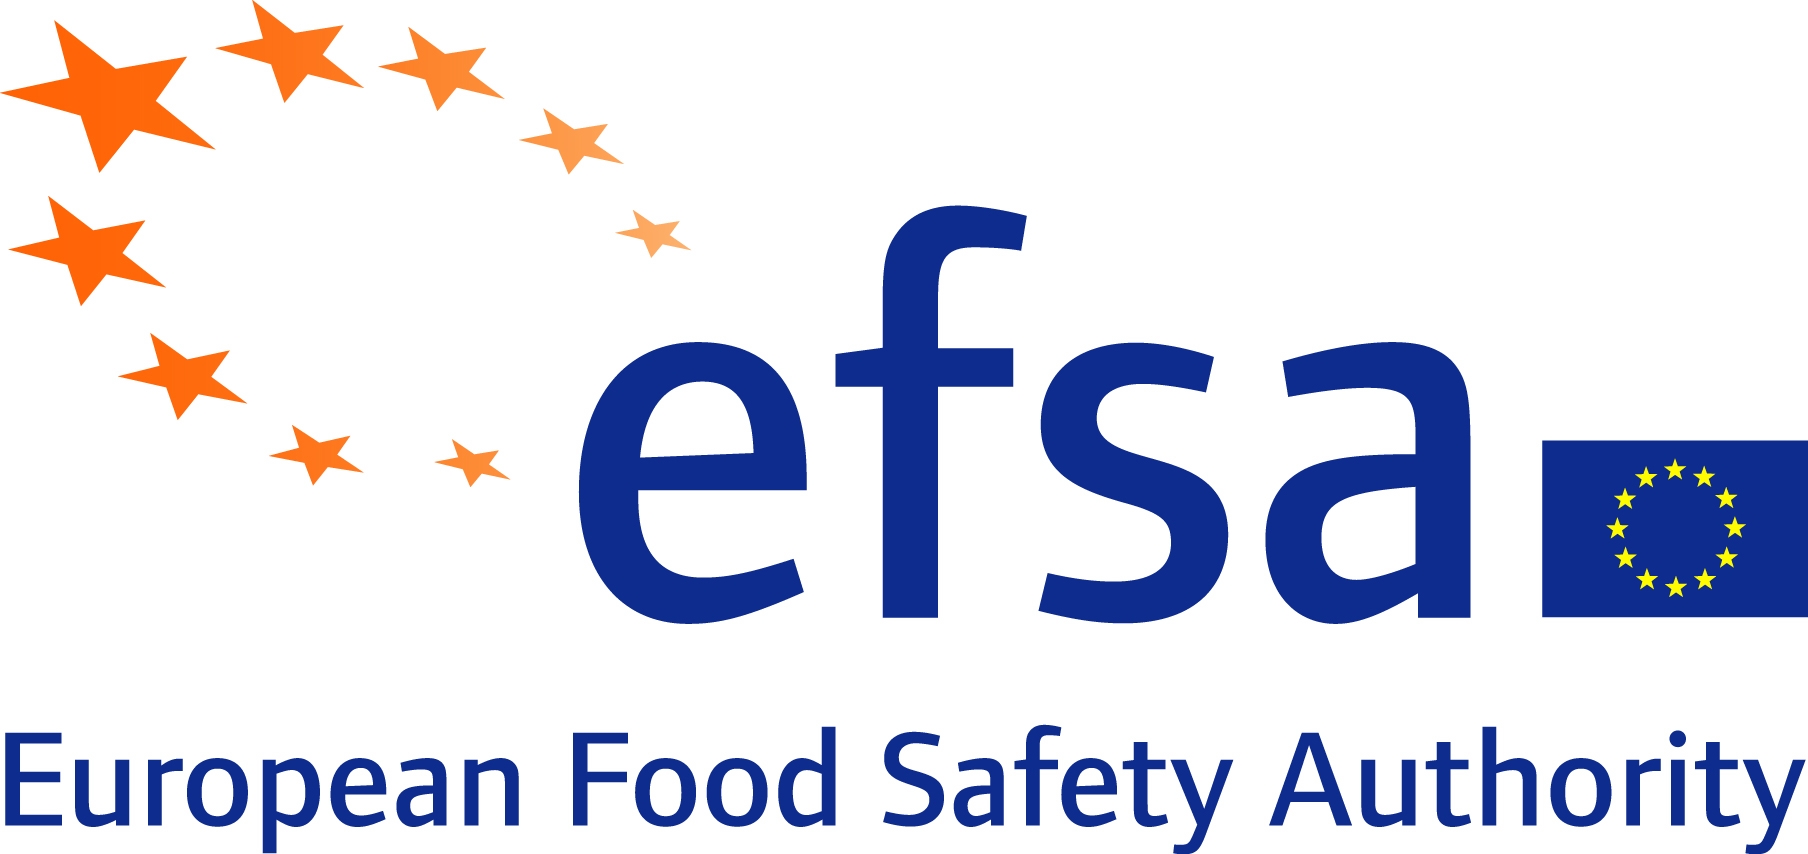 Български контактен център на EFSA предоставя информация относно два нови гранта